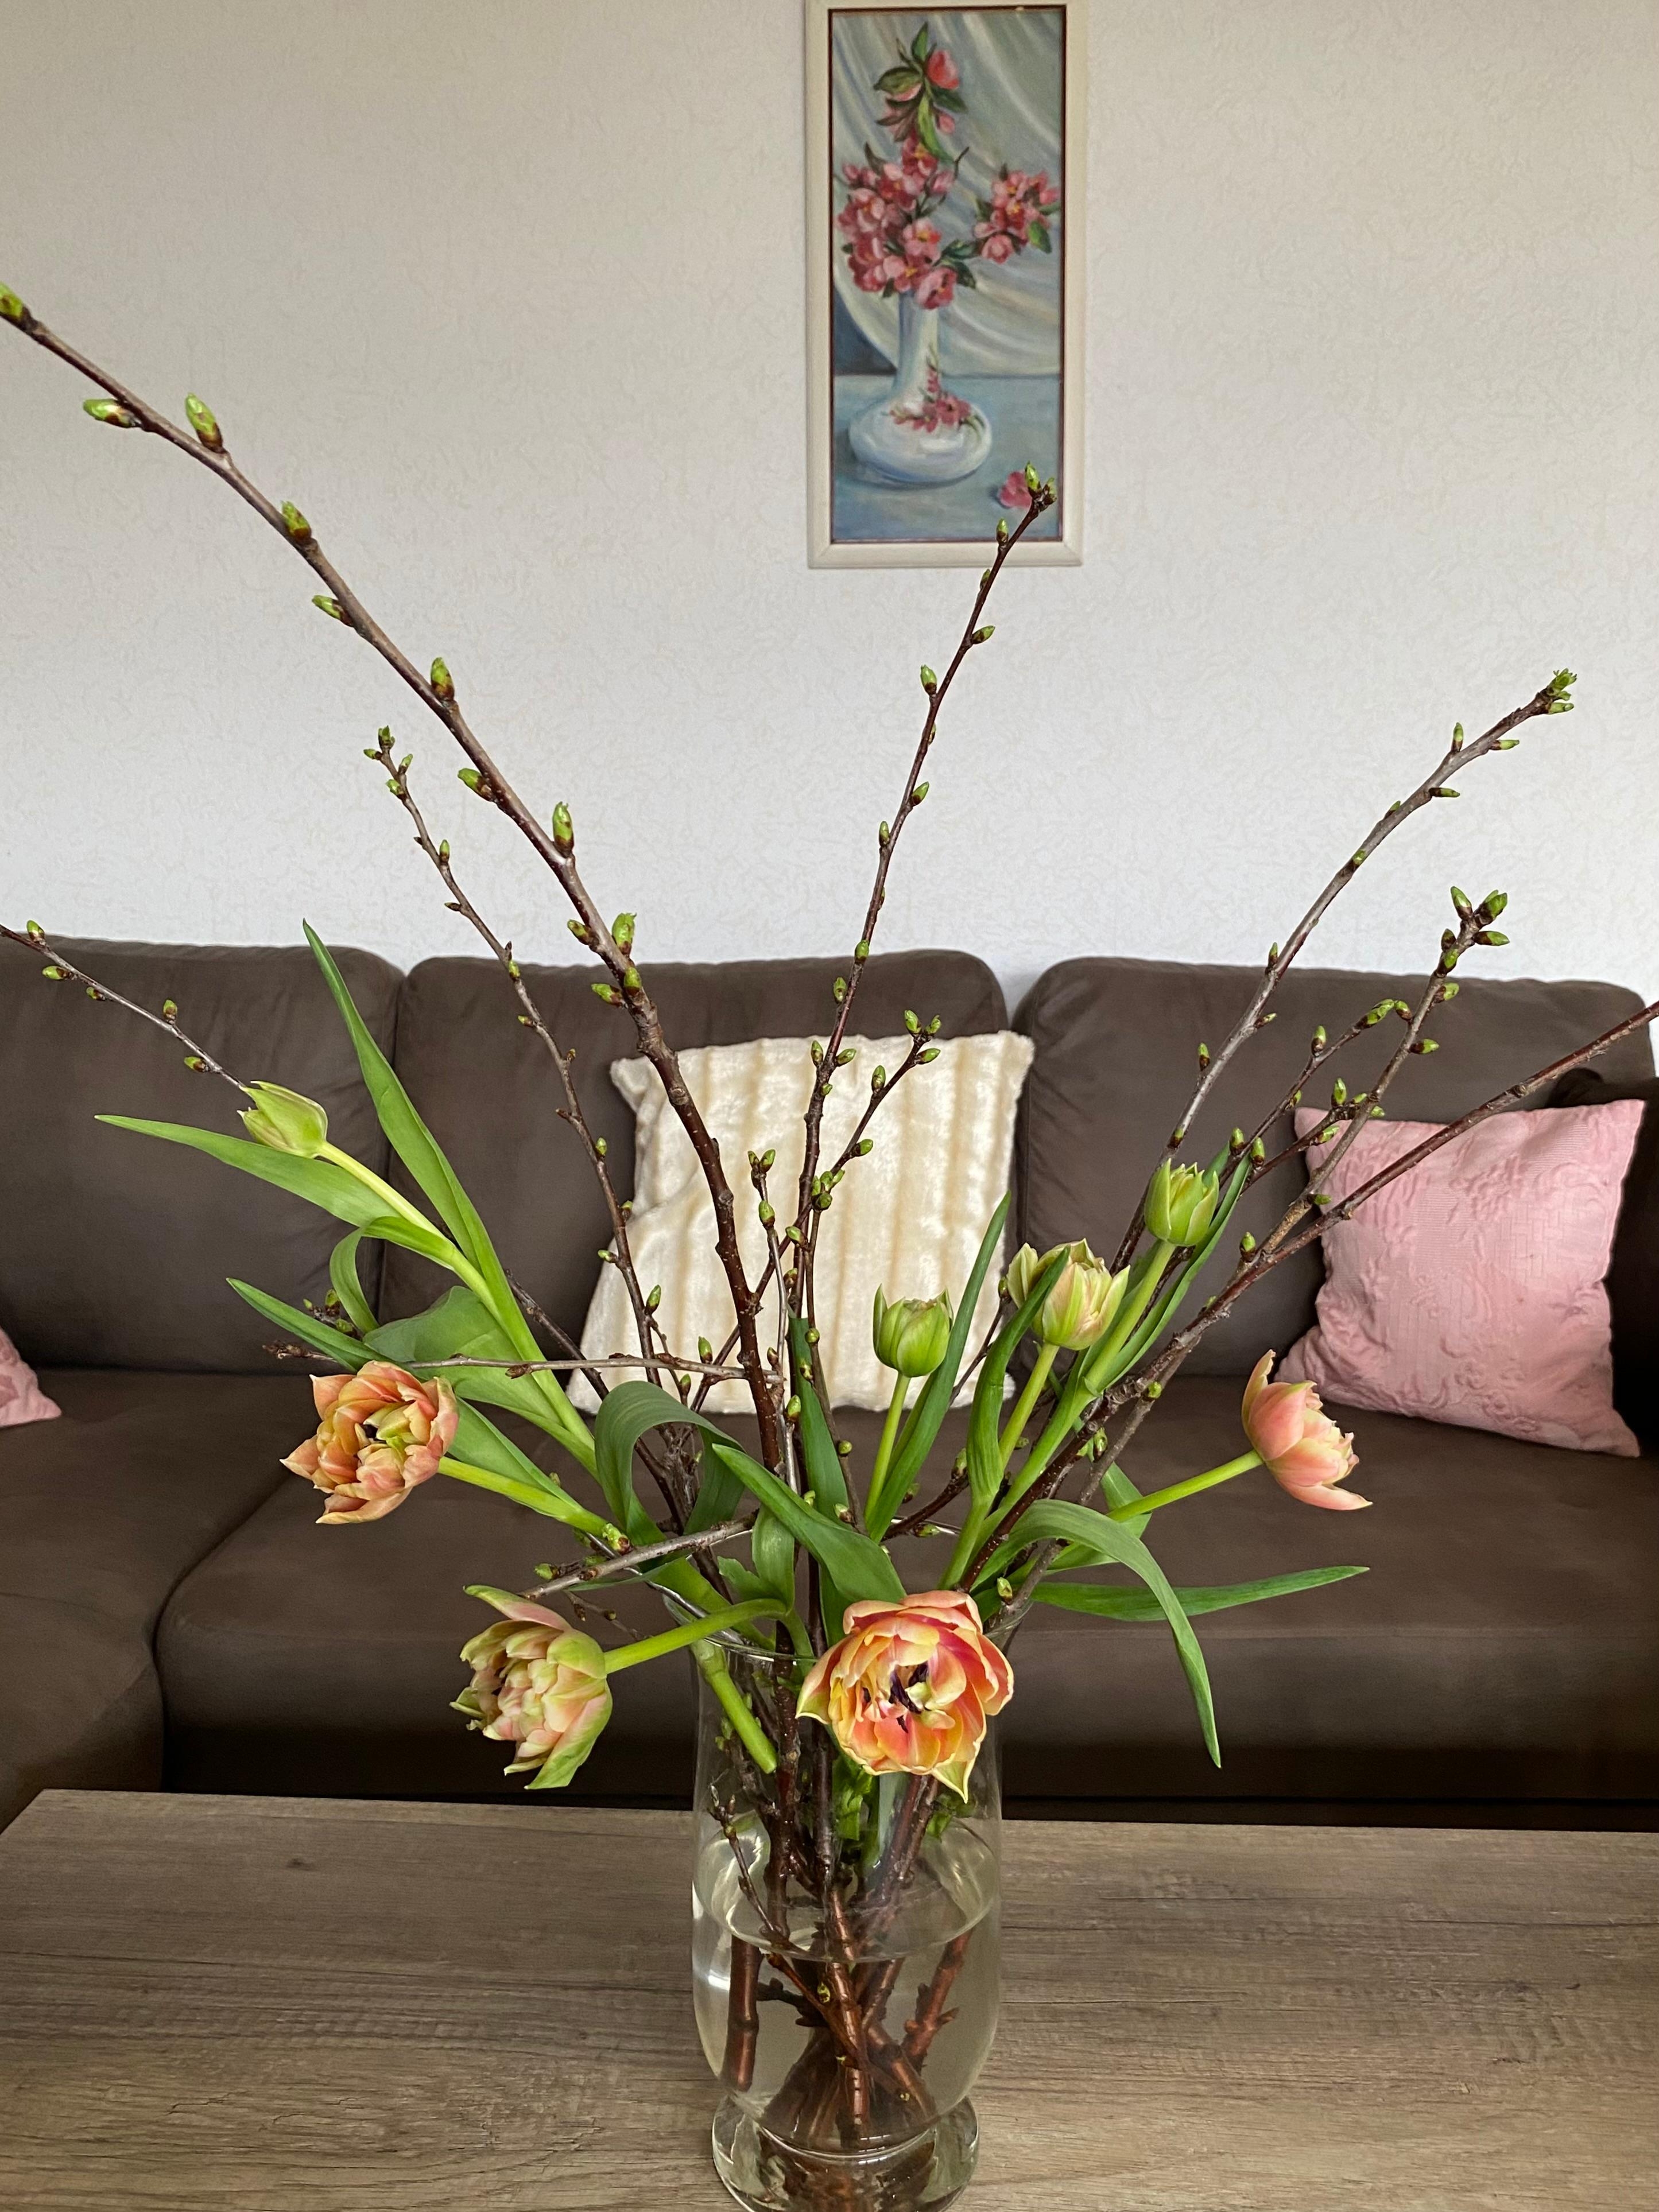 Frühling
#kirschenzweige #tulpen #wohnzimmer